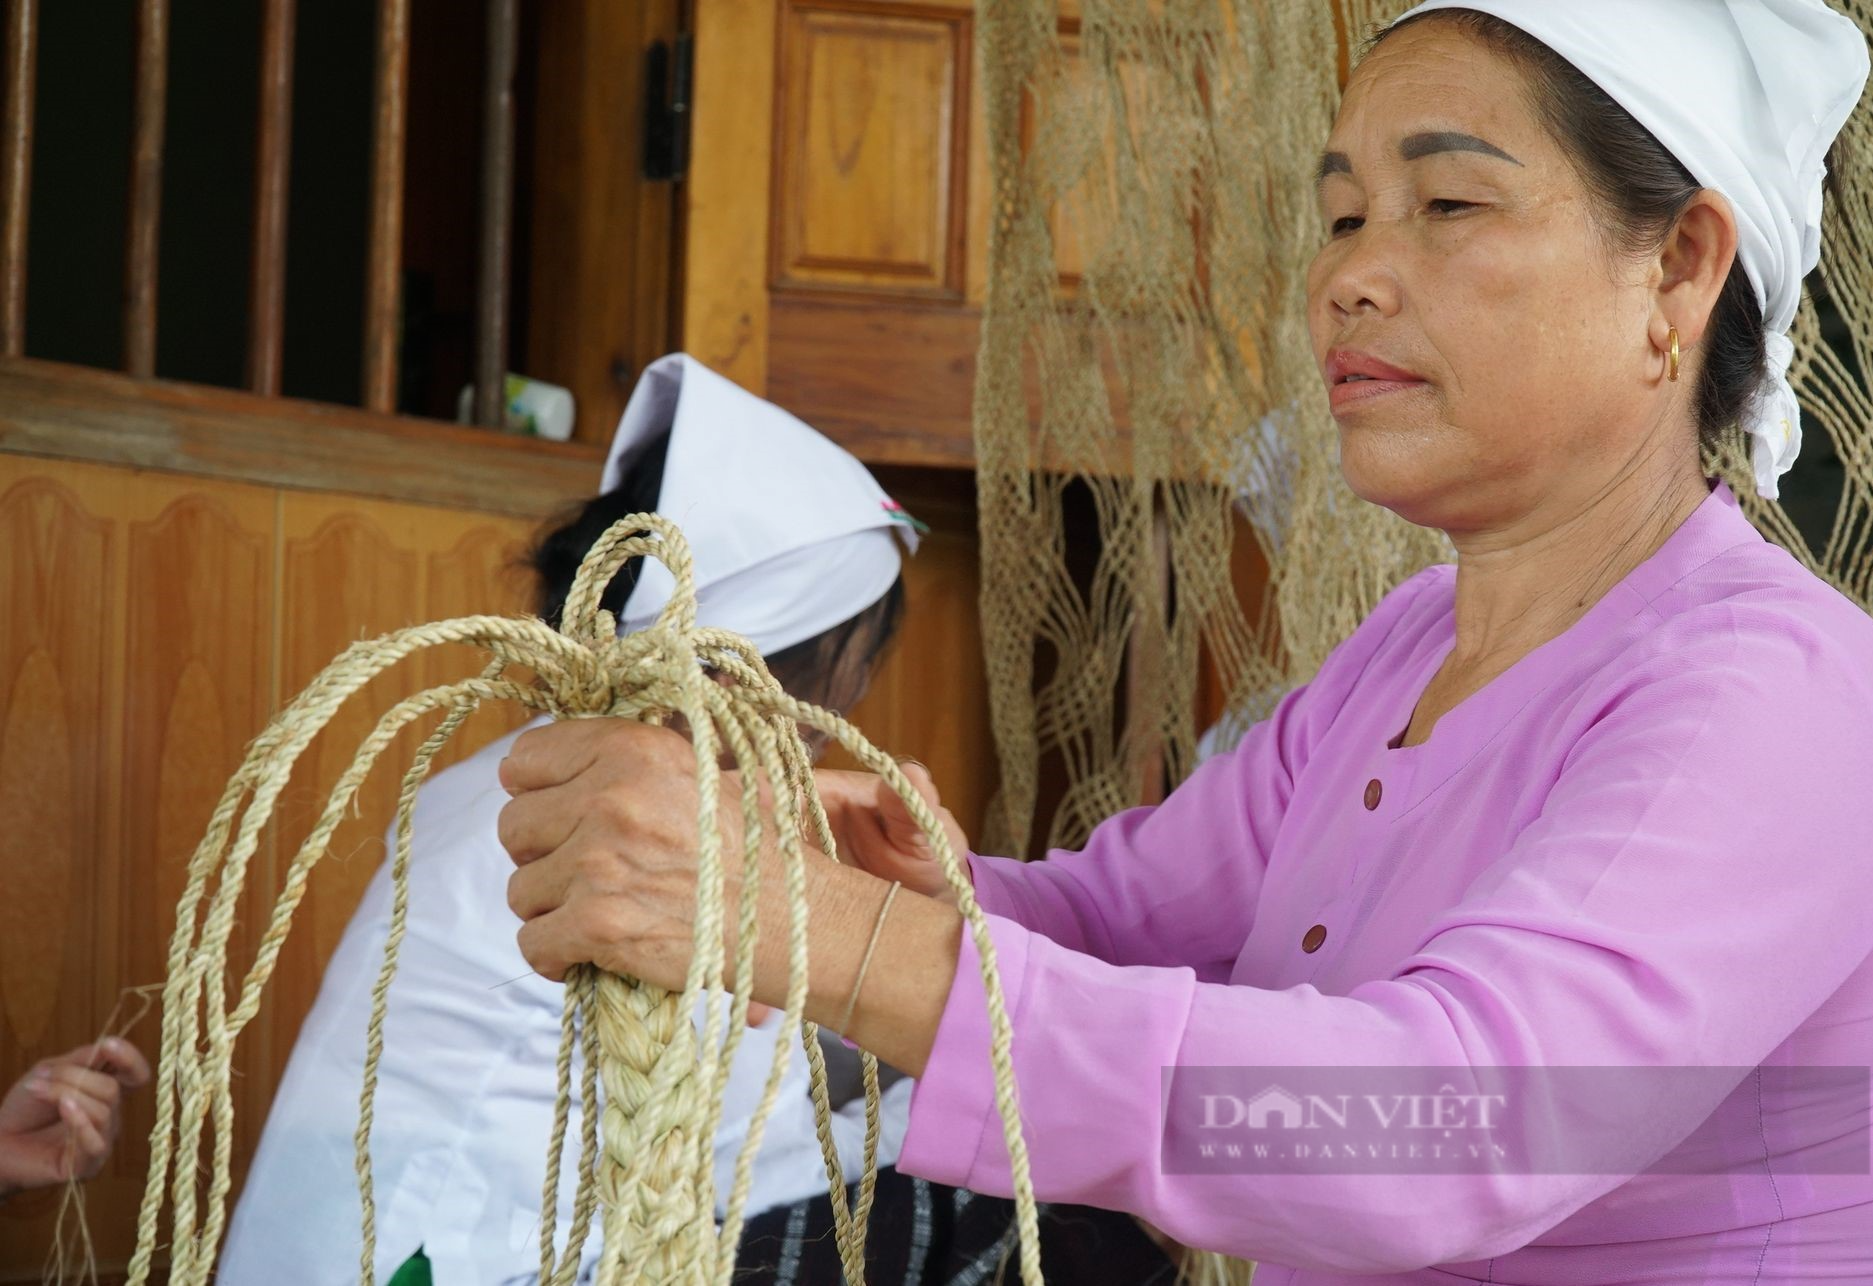 Xã này ở Nghệ An bà con người Thổ tuốt cây gai lấy sợi đan loại võng đặc biệt dùng hàng chục năm không hỏng - Ảnh 3.